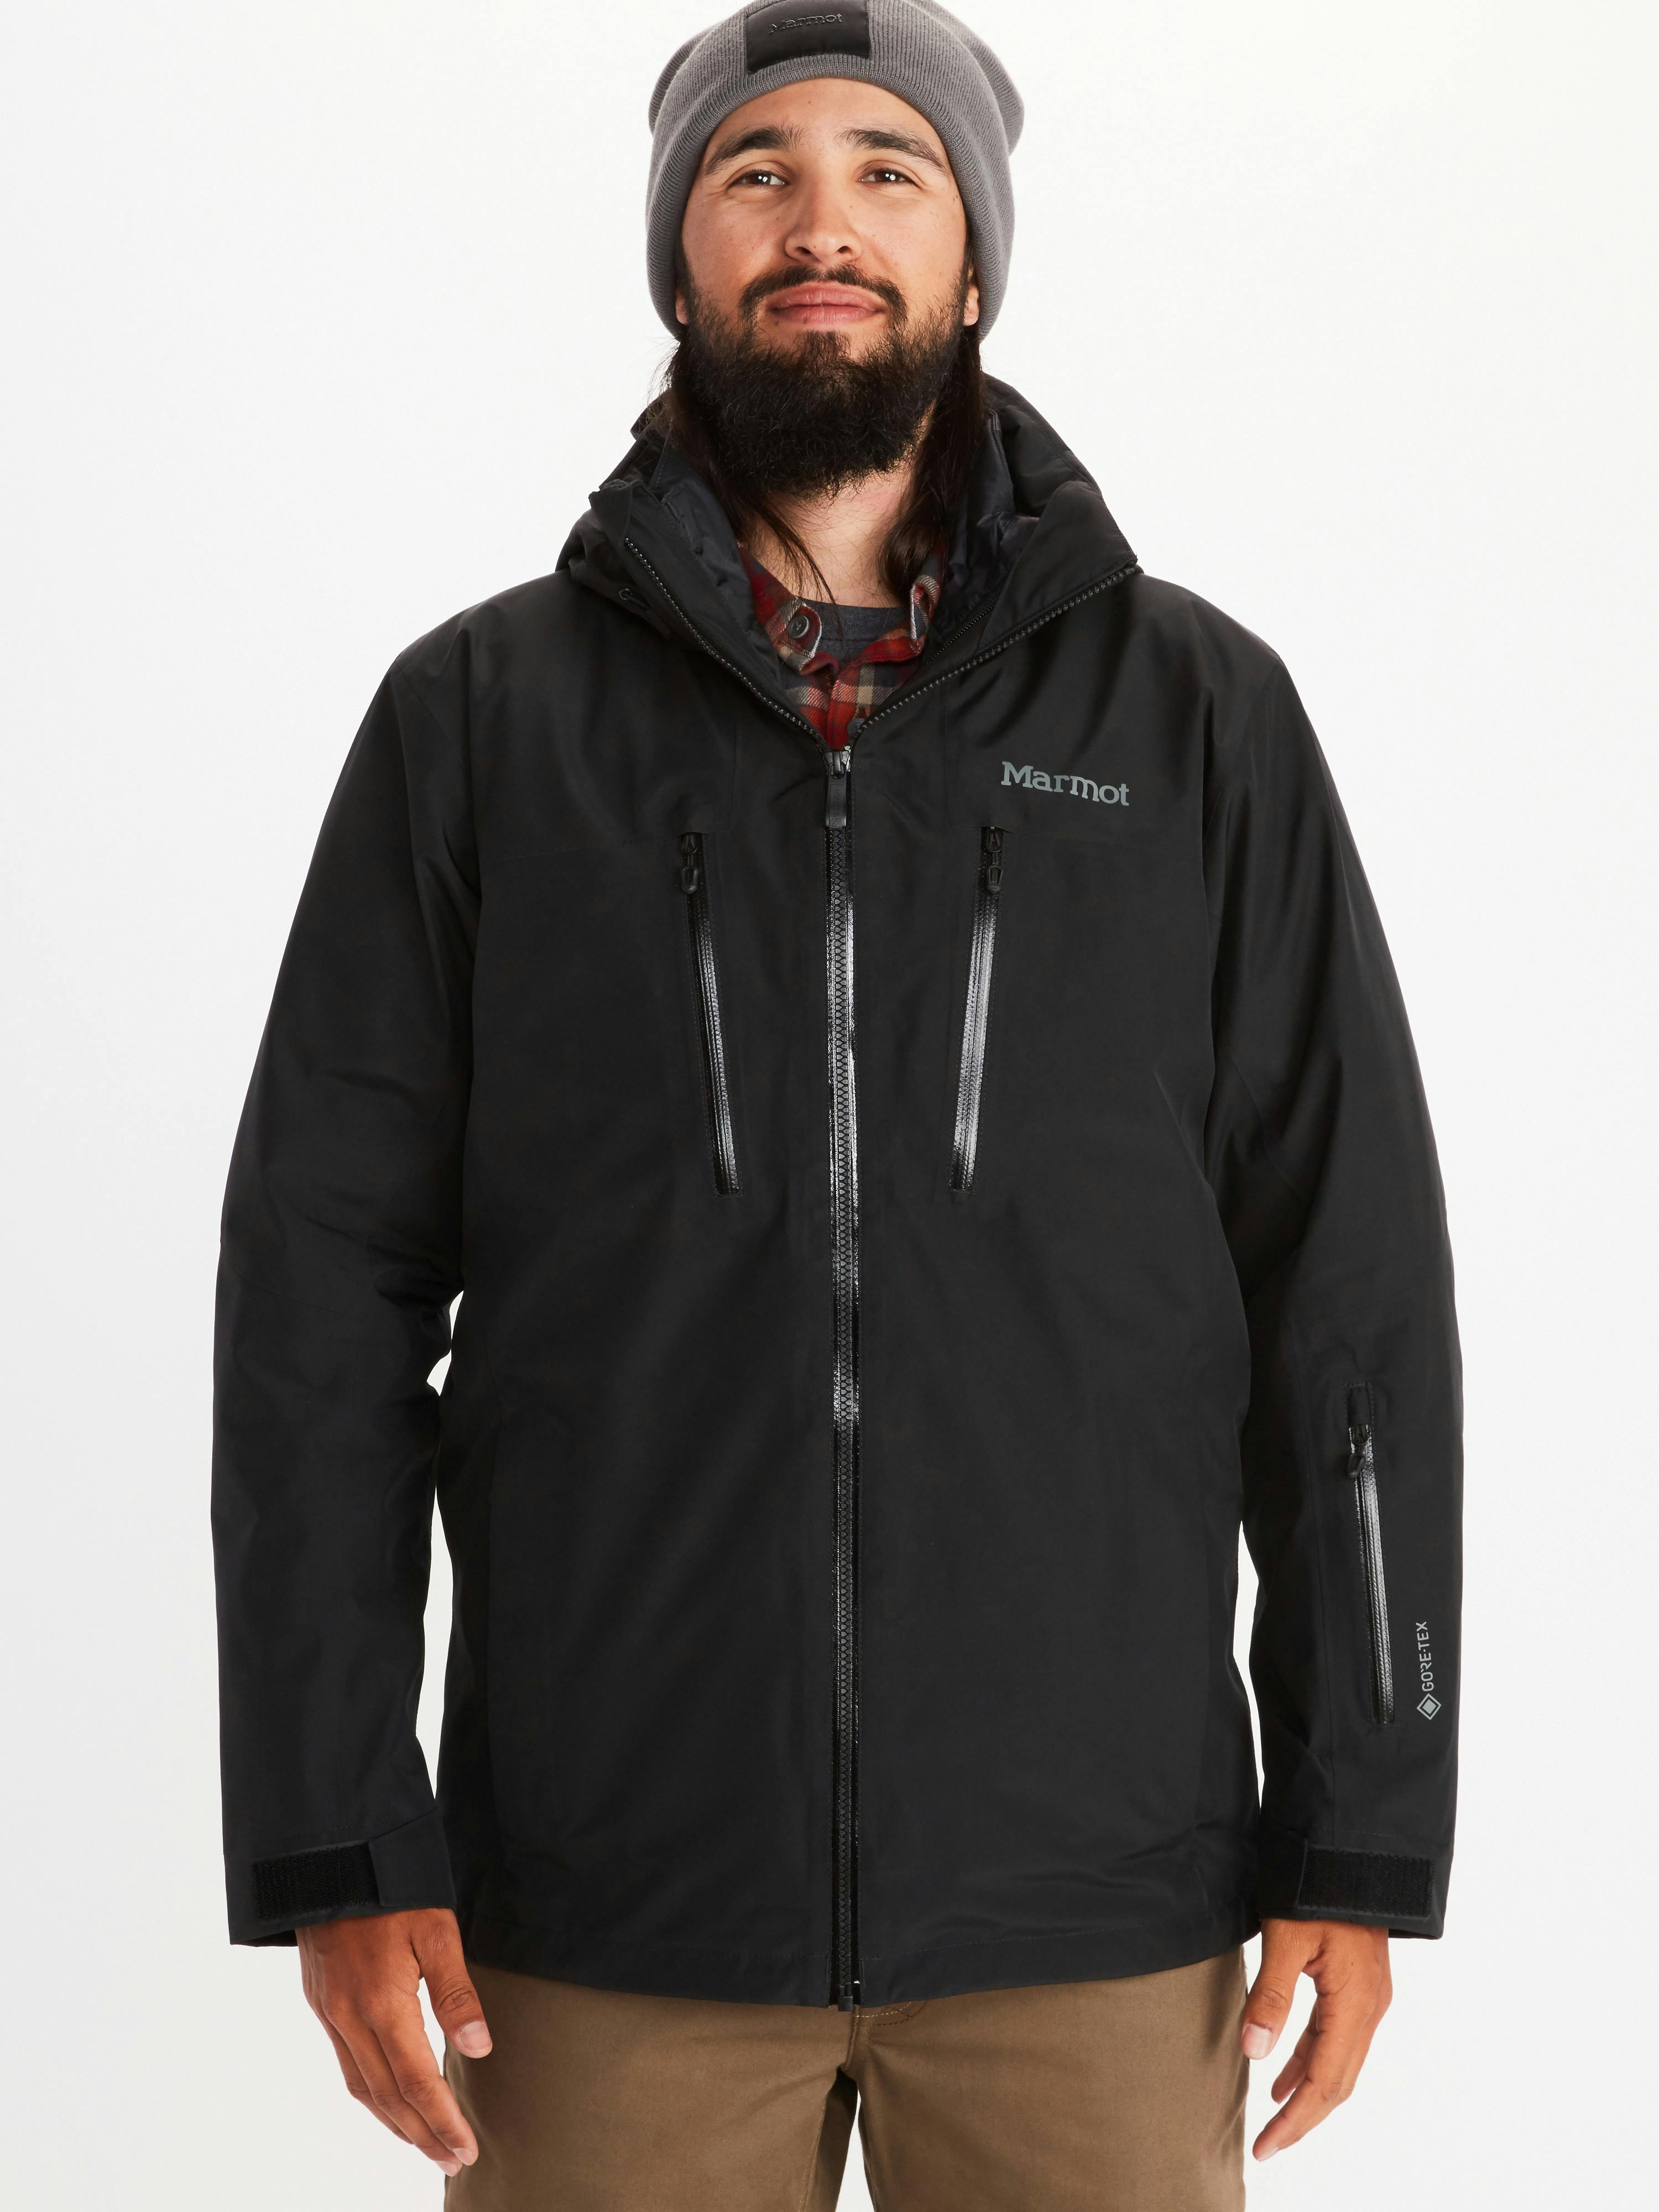 Marmot Men's KT GORE-TEX Component Jacket